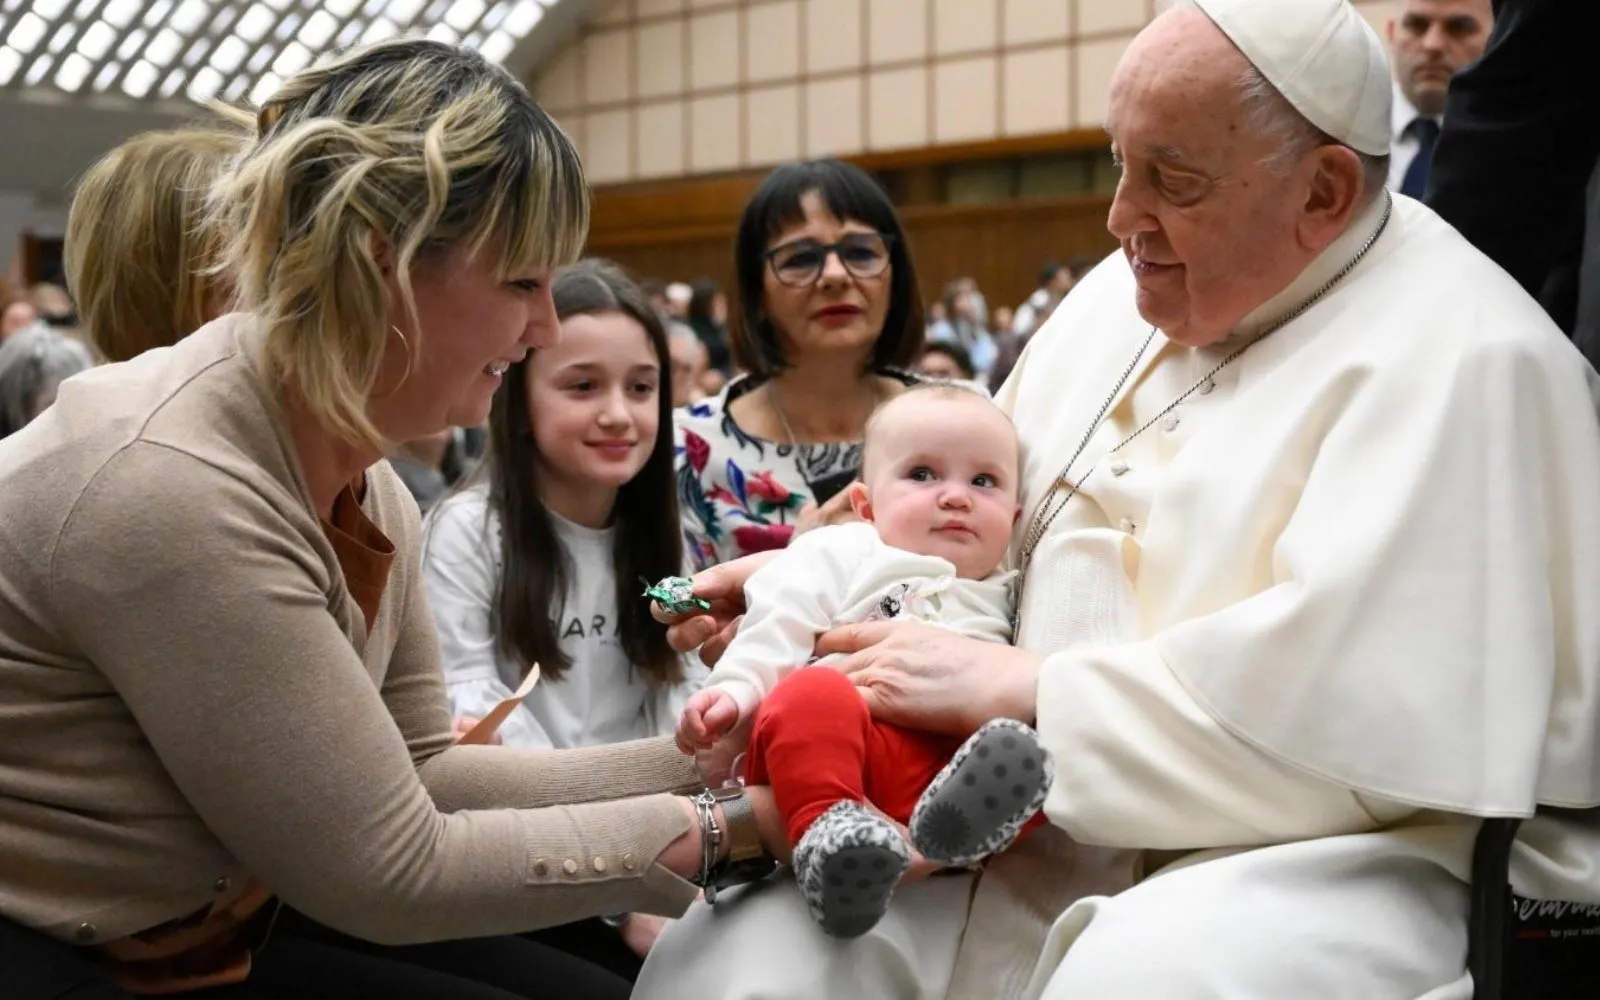 El Papa Francisco bendice a un bebé durante una audiencia general en el Vaticano.?w=200&h=150